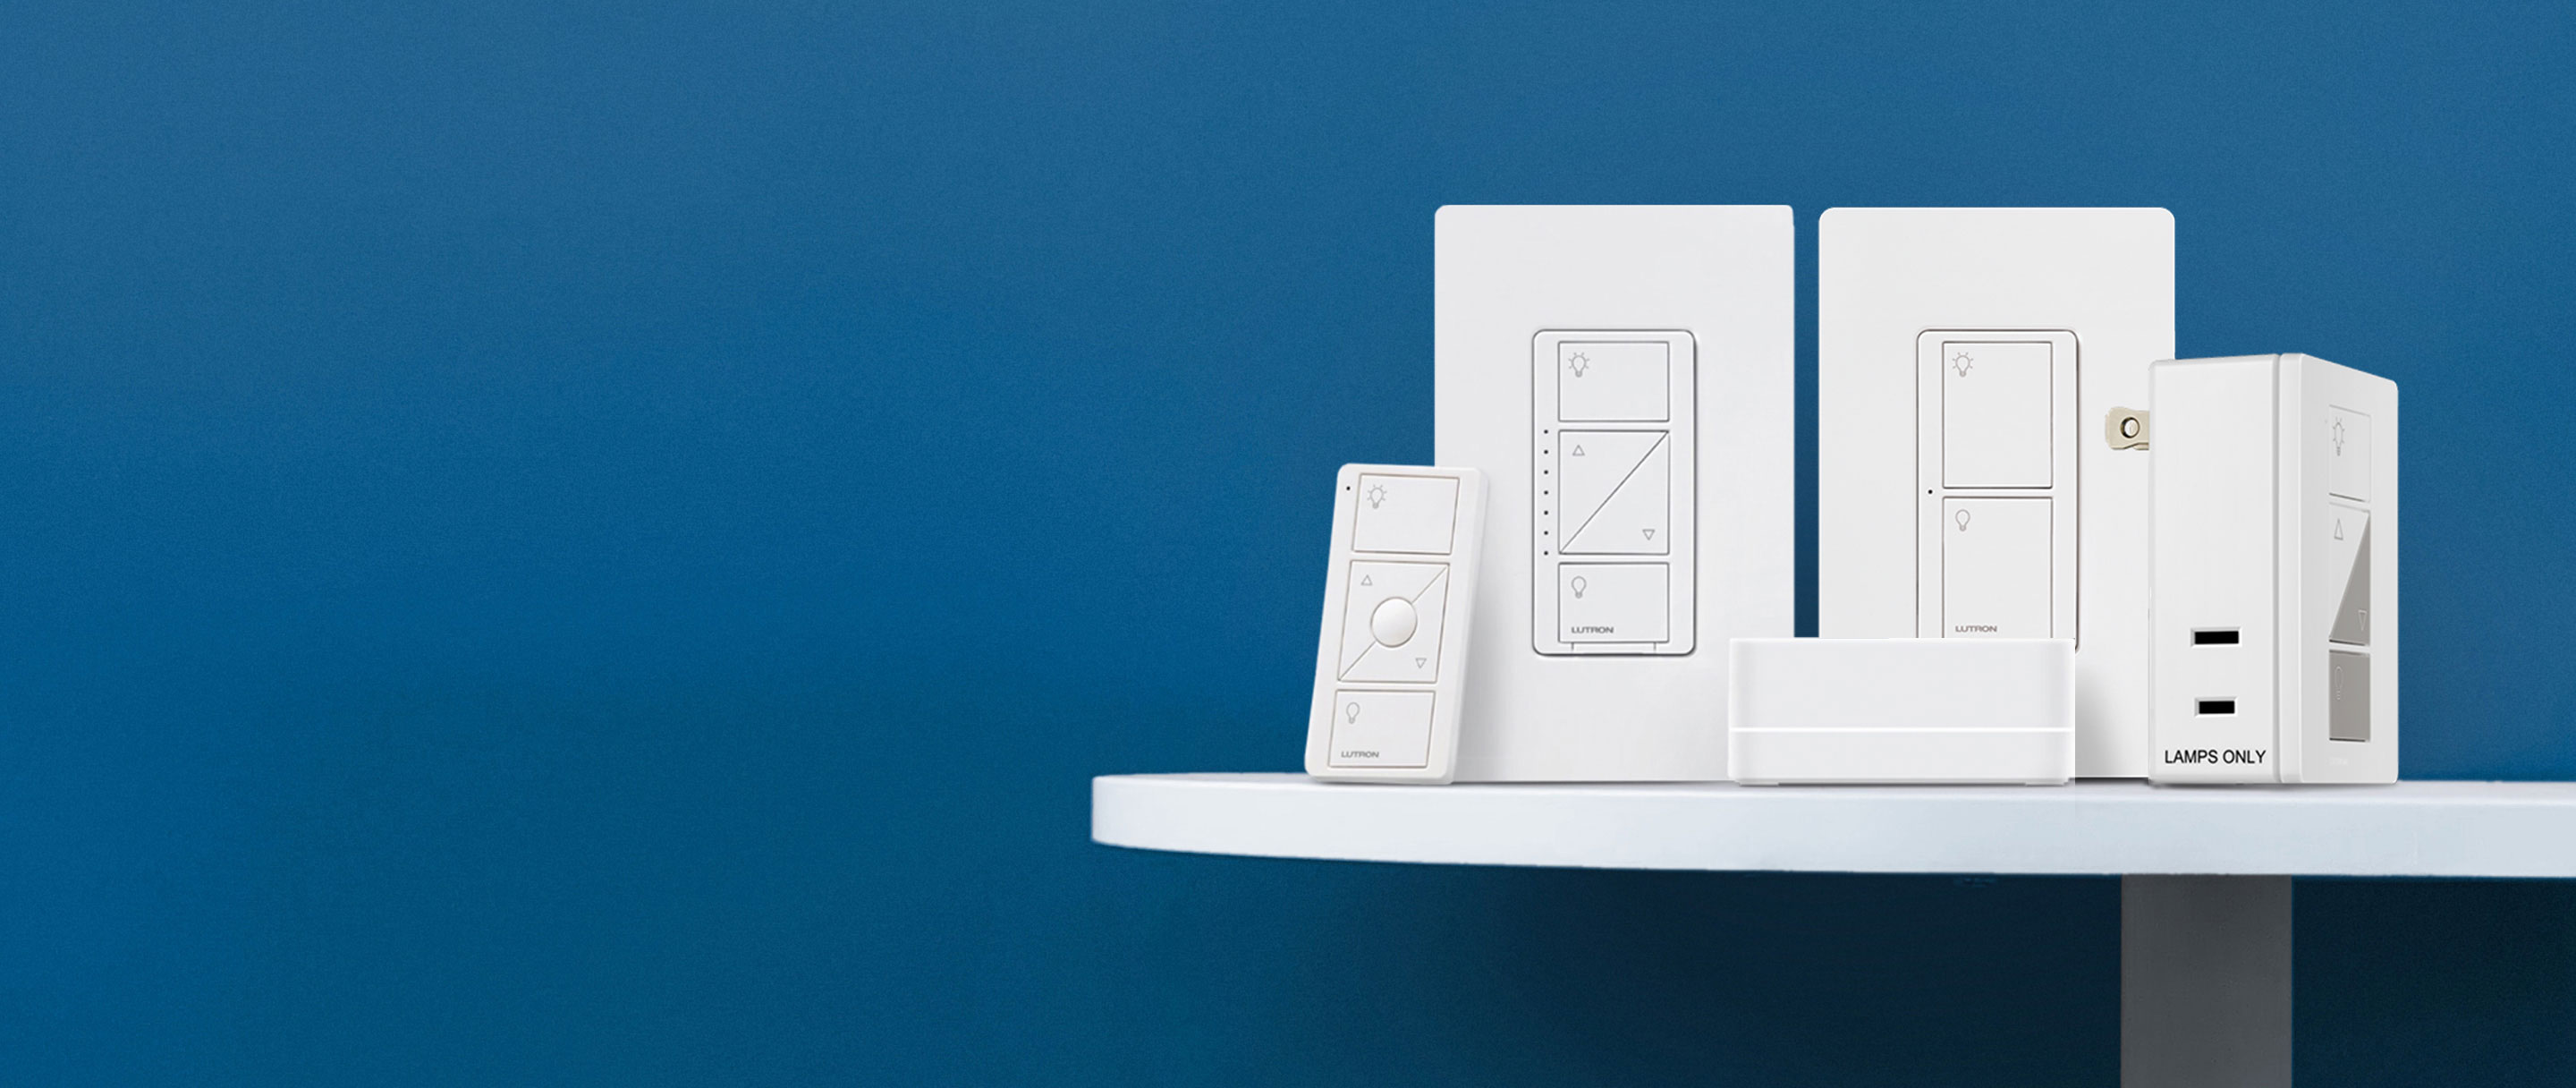 Caseta Wireless Smart Lighting Dimmer Switch Starter Kit